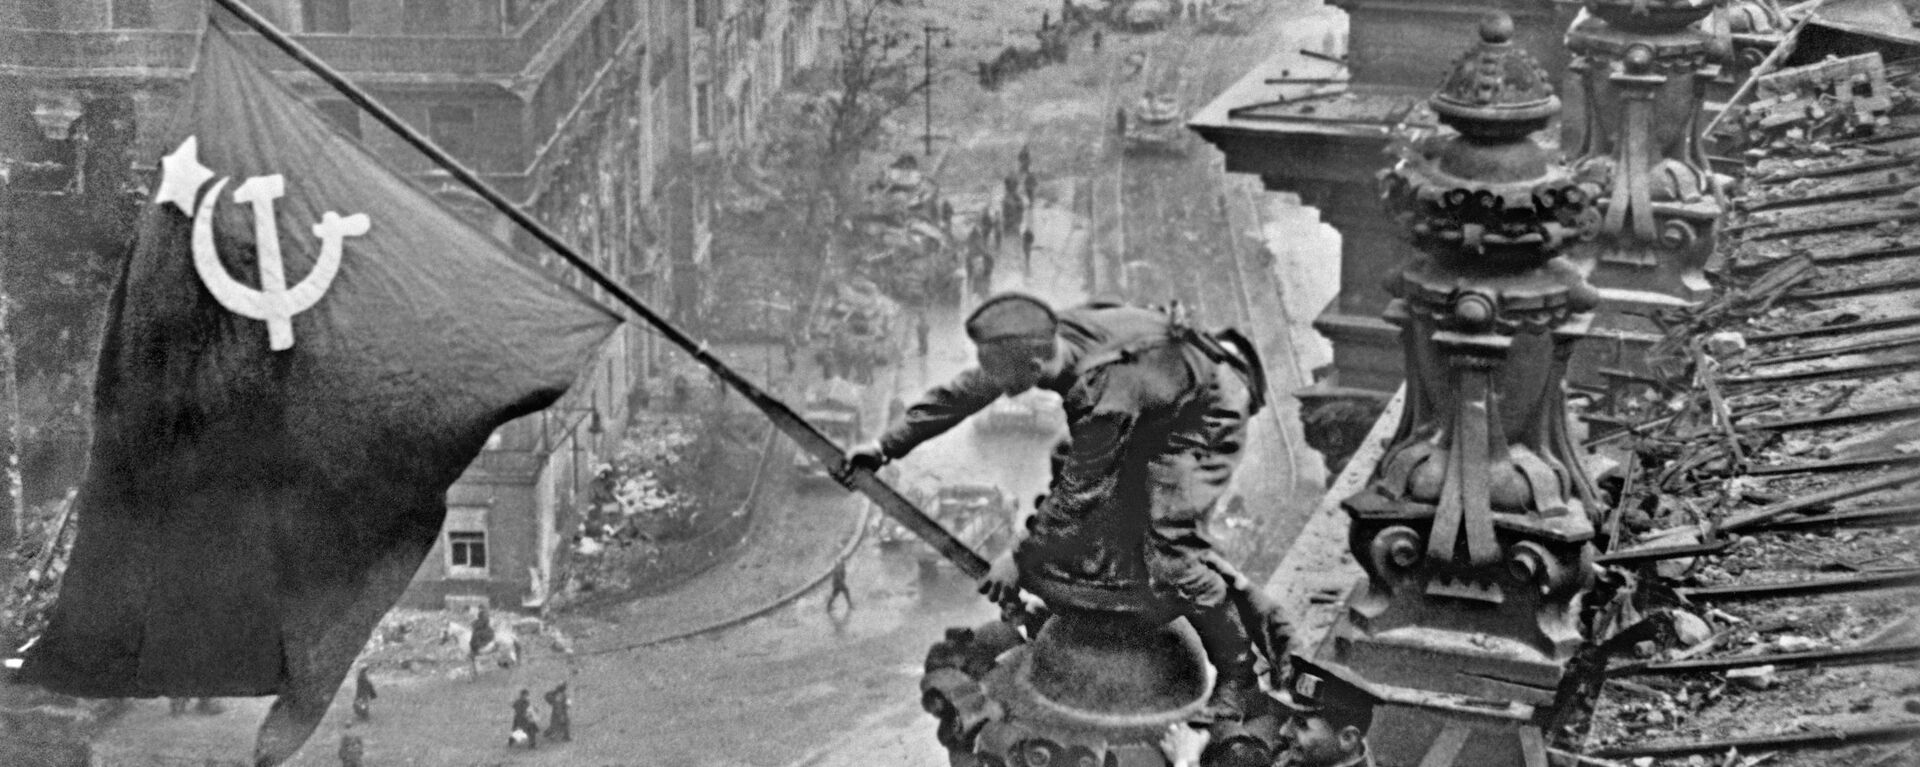 Великая Отечественная война 1941-1945 г.г. Знамя Победы над Берлином - Sputnik Латвия, 1920, 01.07.2021